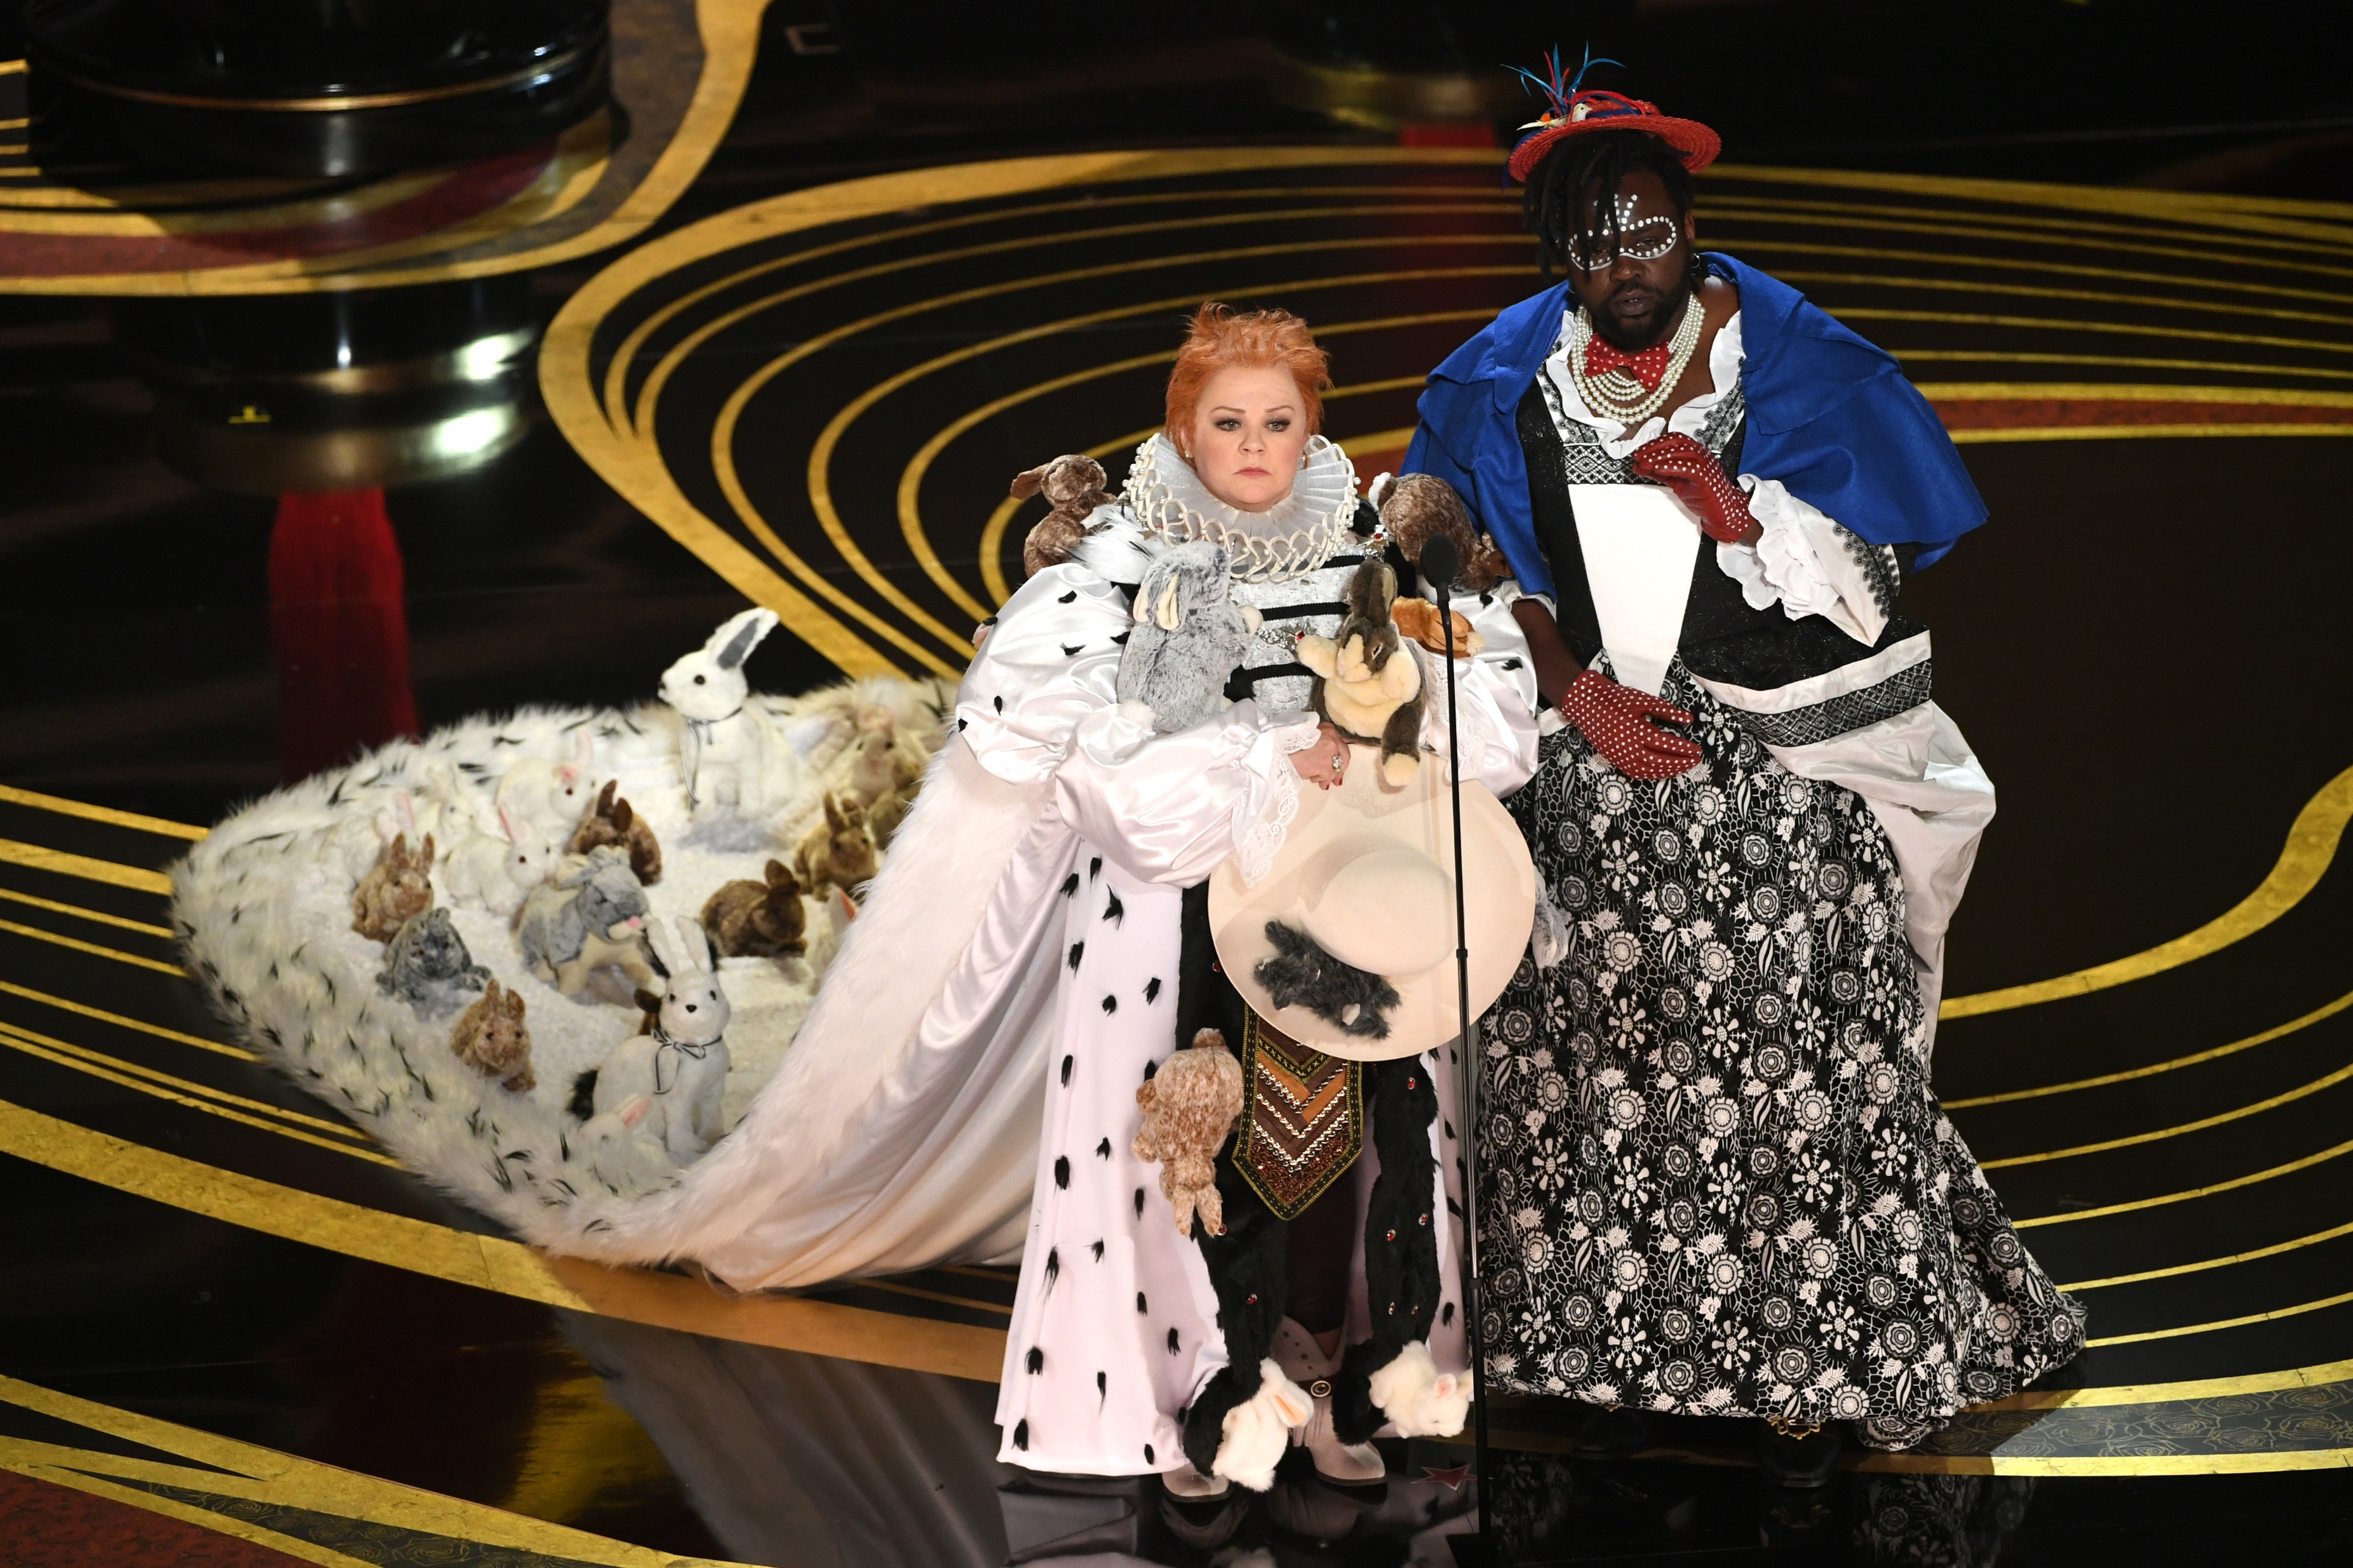 As vestimentas de Melissa Mcarthy e Brian Tyree Henry que causaram polêmica no Oscar 2019 (Foto: Getty Images)